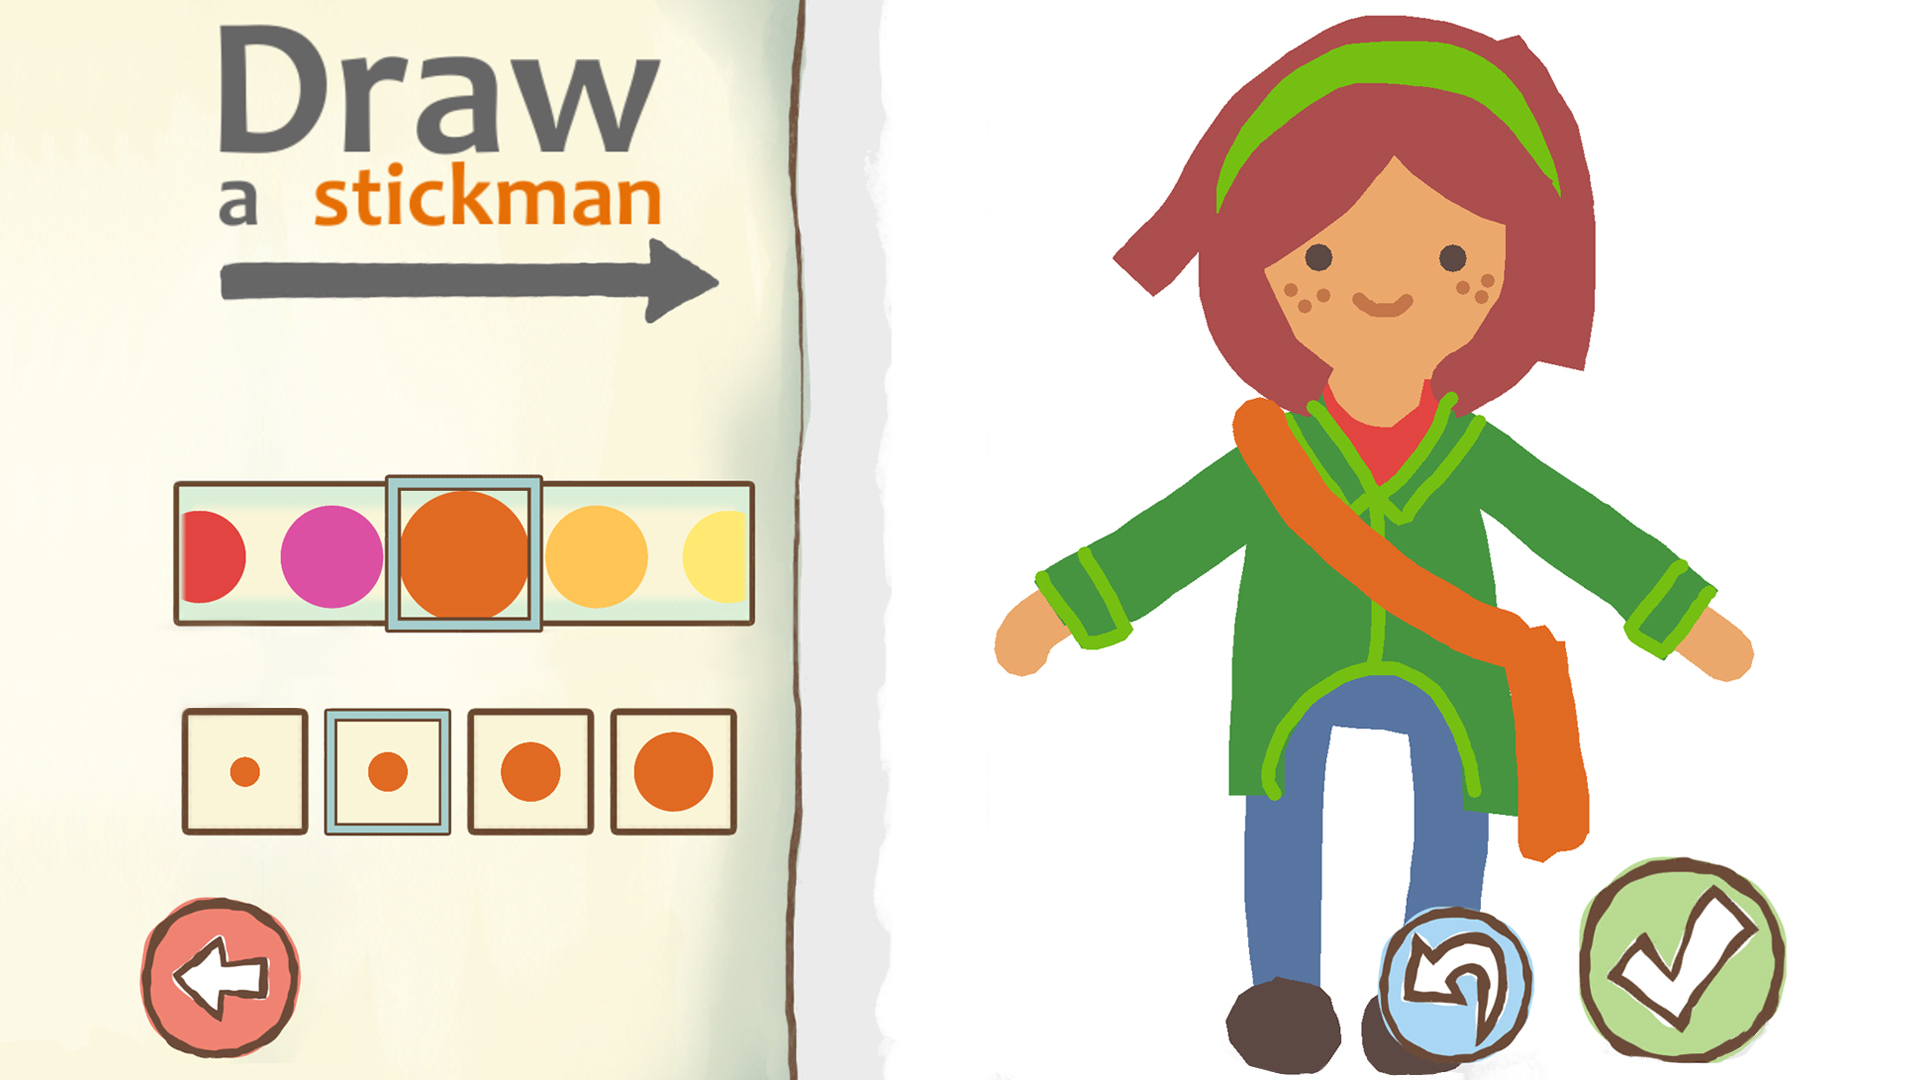 Draw a stickman game